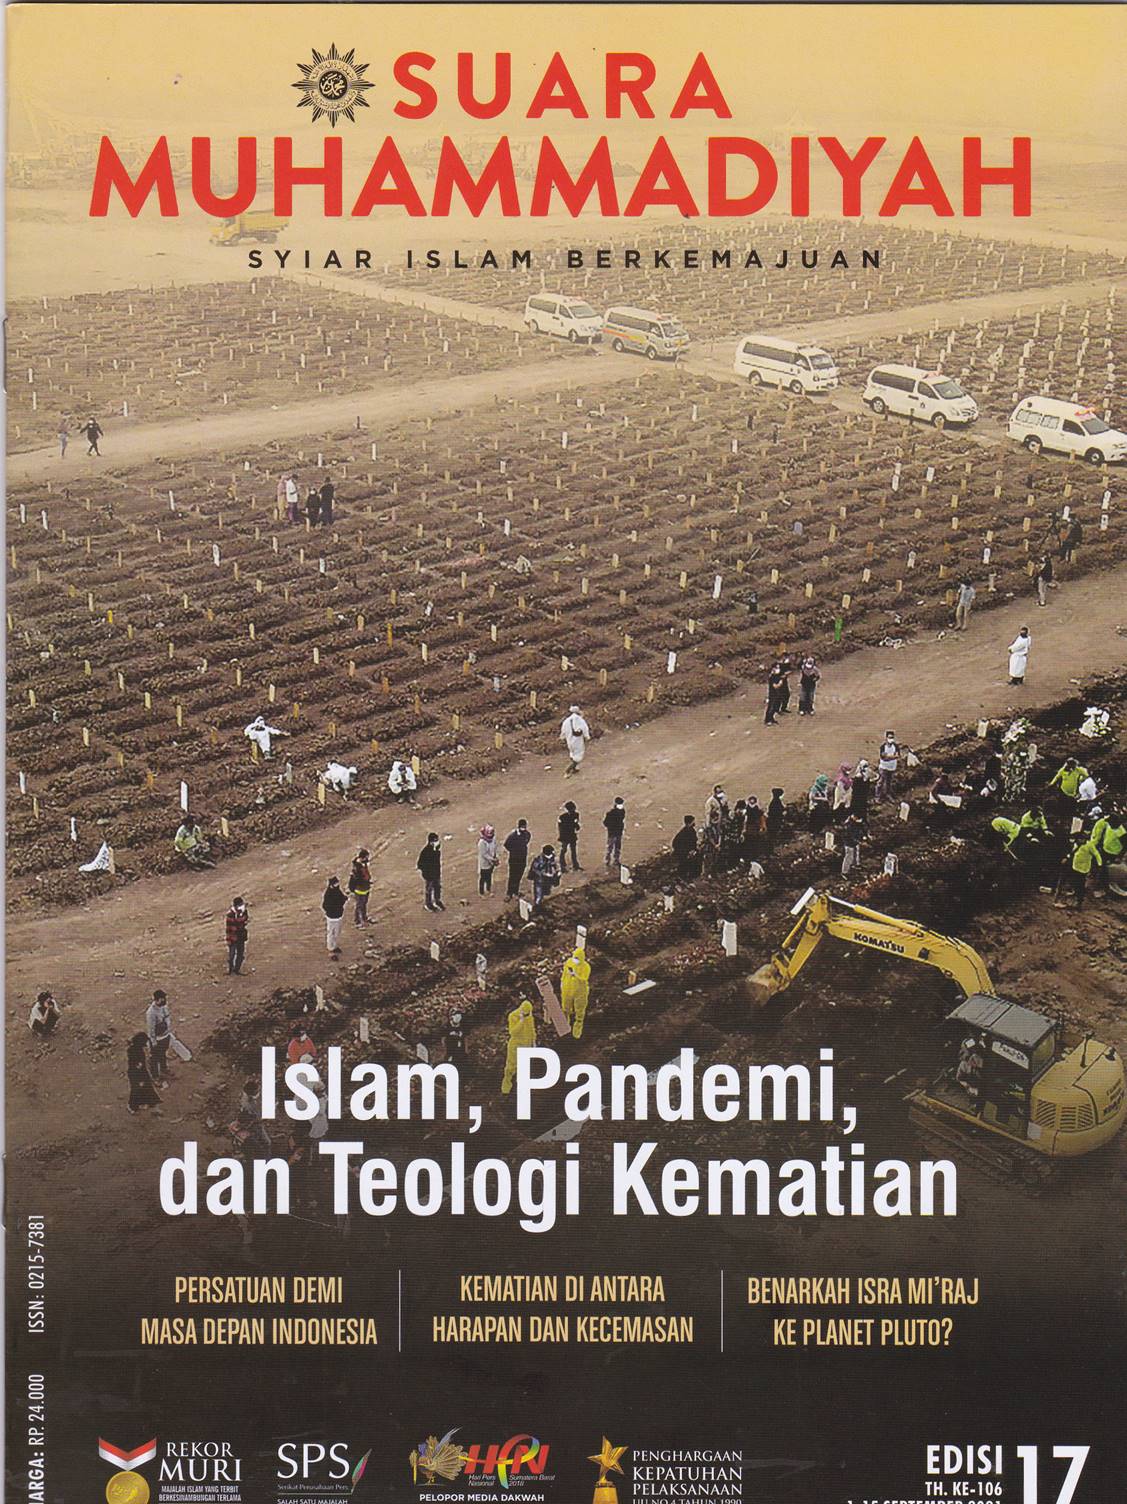 SUARA MUHAMMADIYAH: Syiar Islam Berkemajuan= Islam, Pandemi, dan Teologi Kematian